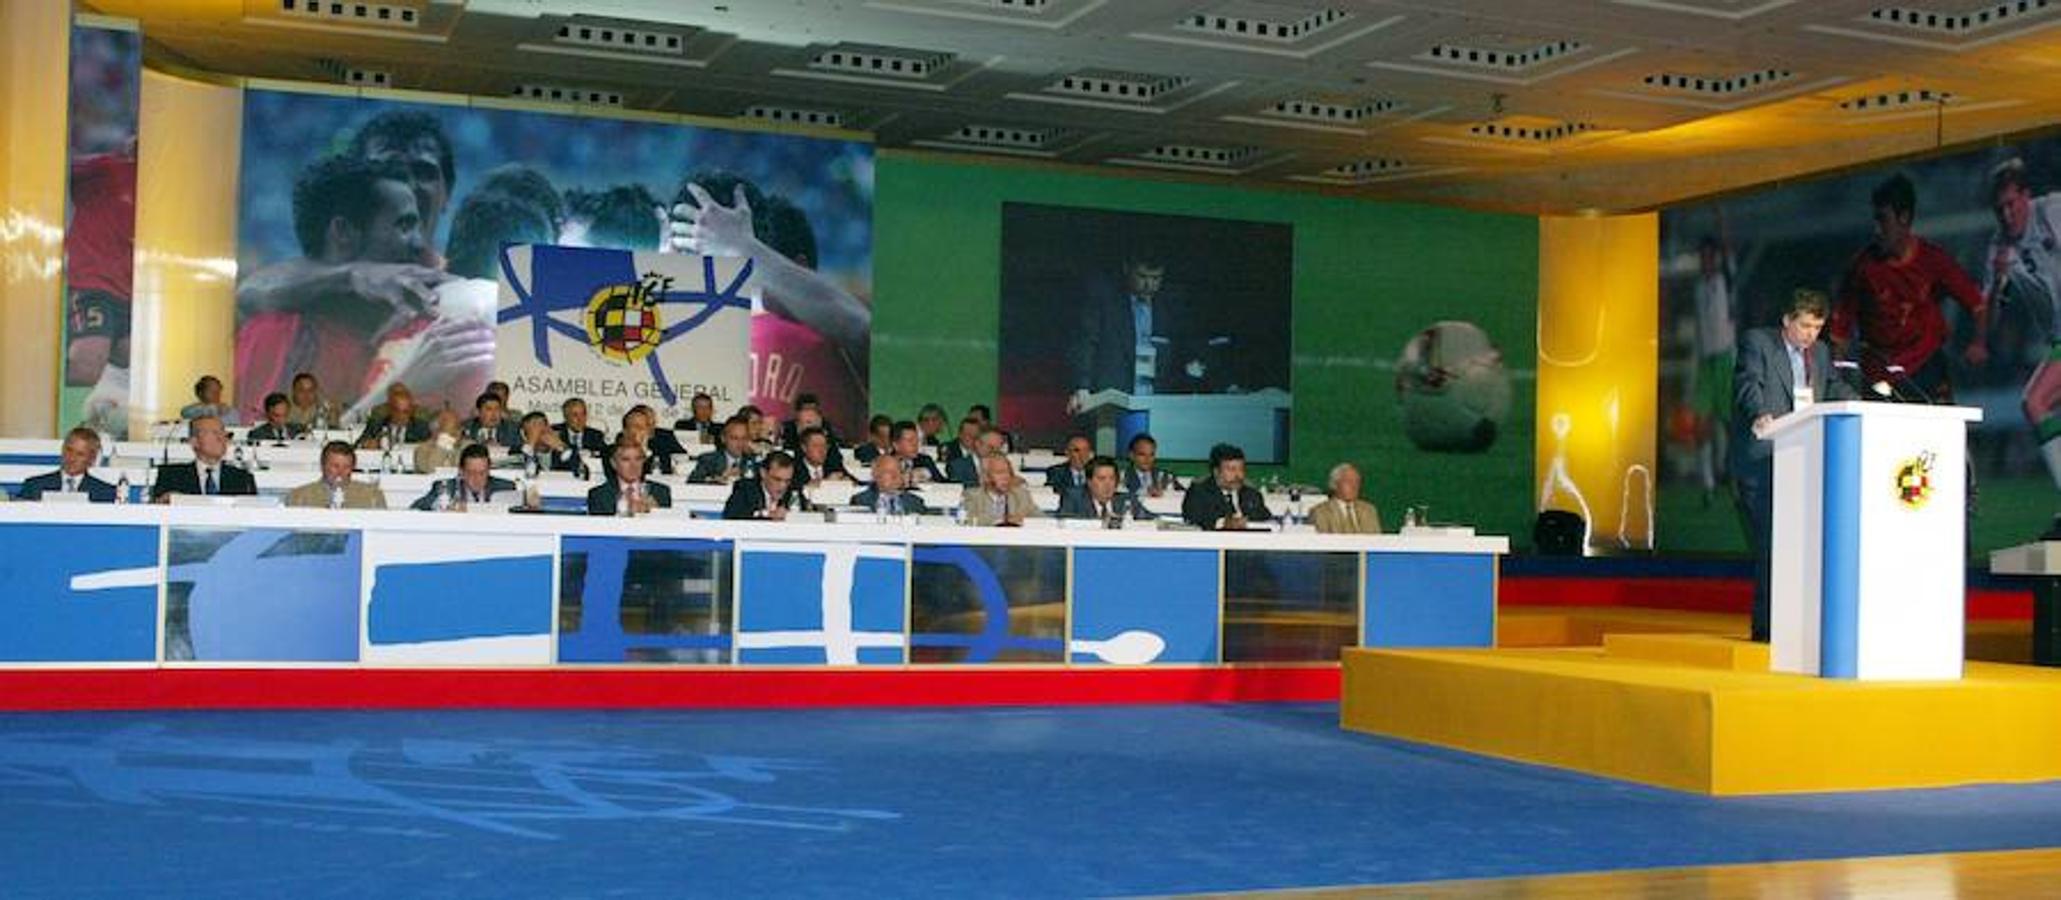 Villar dirige la Asamblea General de la FEF el 12 de julio de 2002.